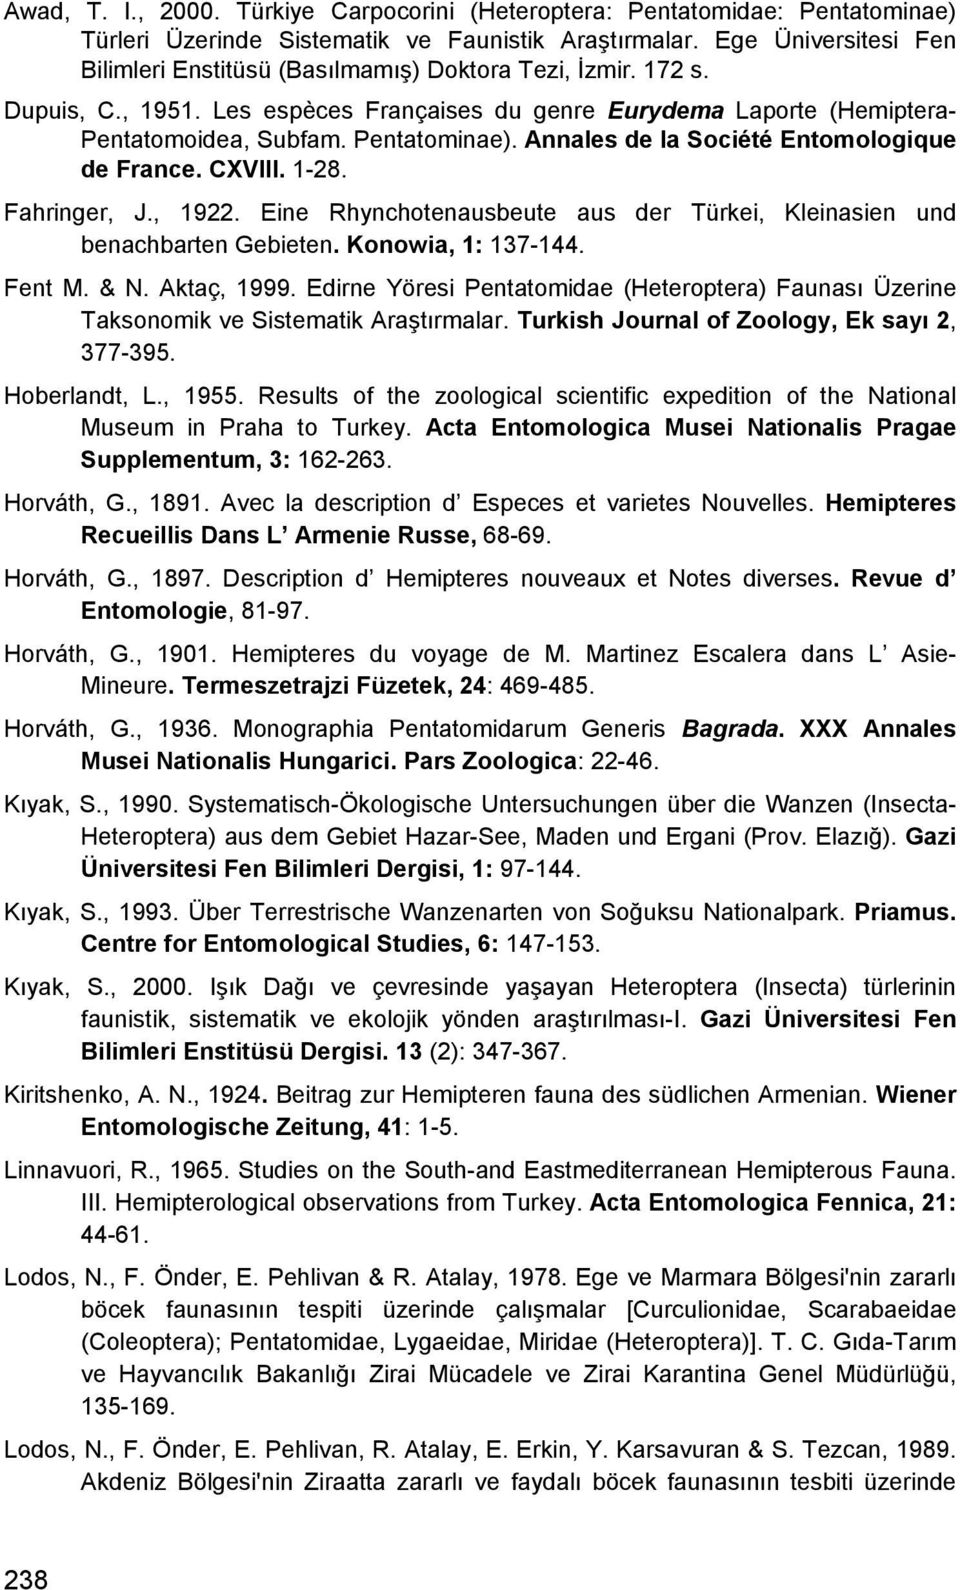 Annales de la Société Entomologique de France. CXVIII. 1-28. Fahringer, J., 1922. Eine Rhynchotenausbeute aus der Türkei, Kleinasien und benachbarten Gebieten. Konowia, 1: 137-144. Fent M. & N.